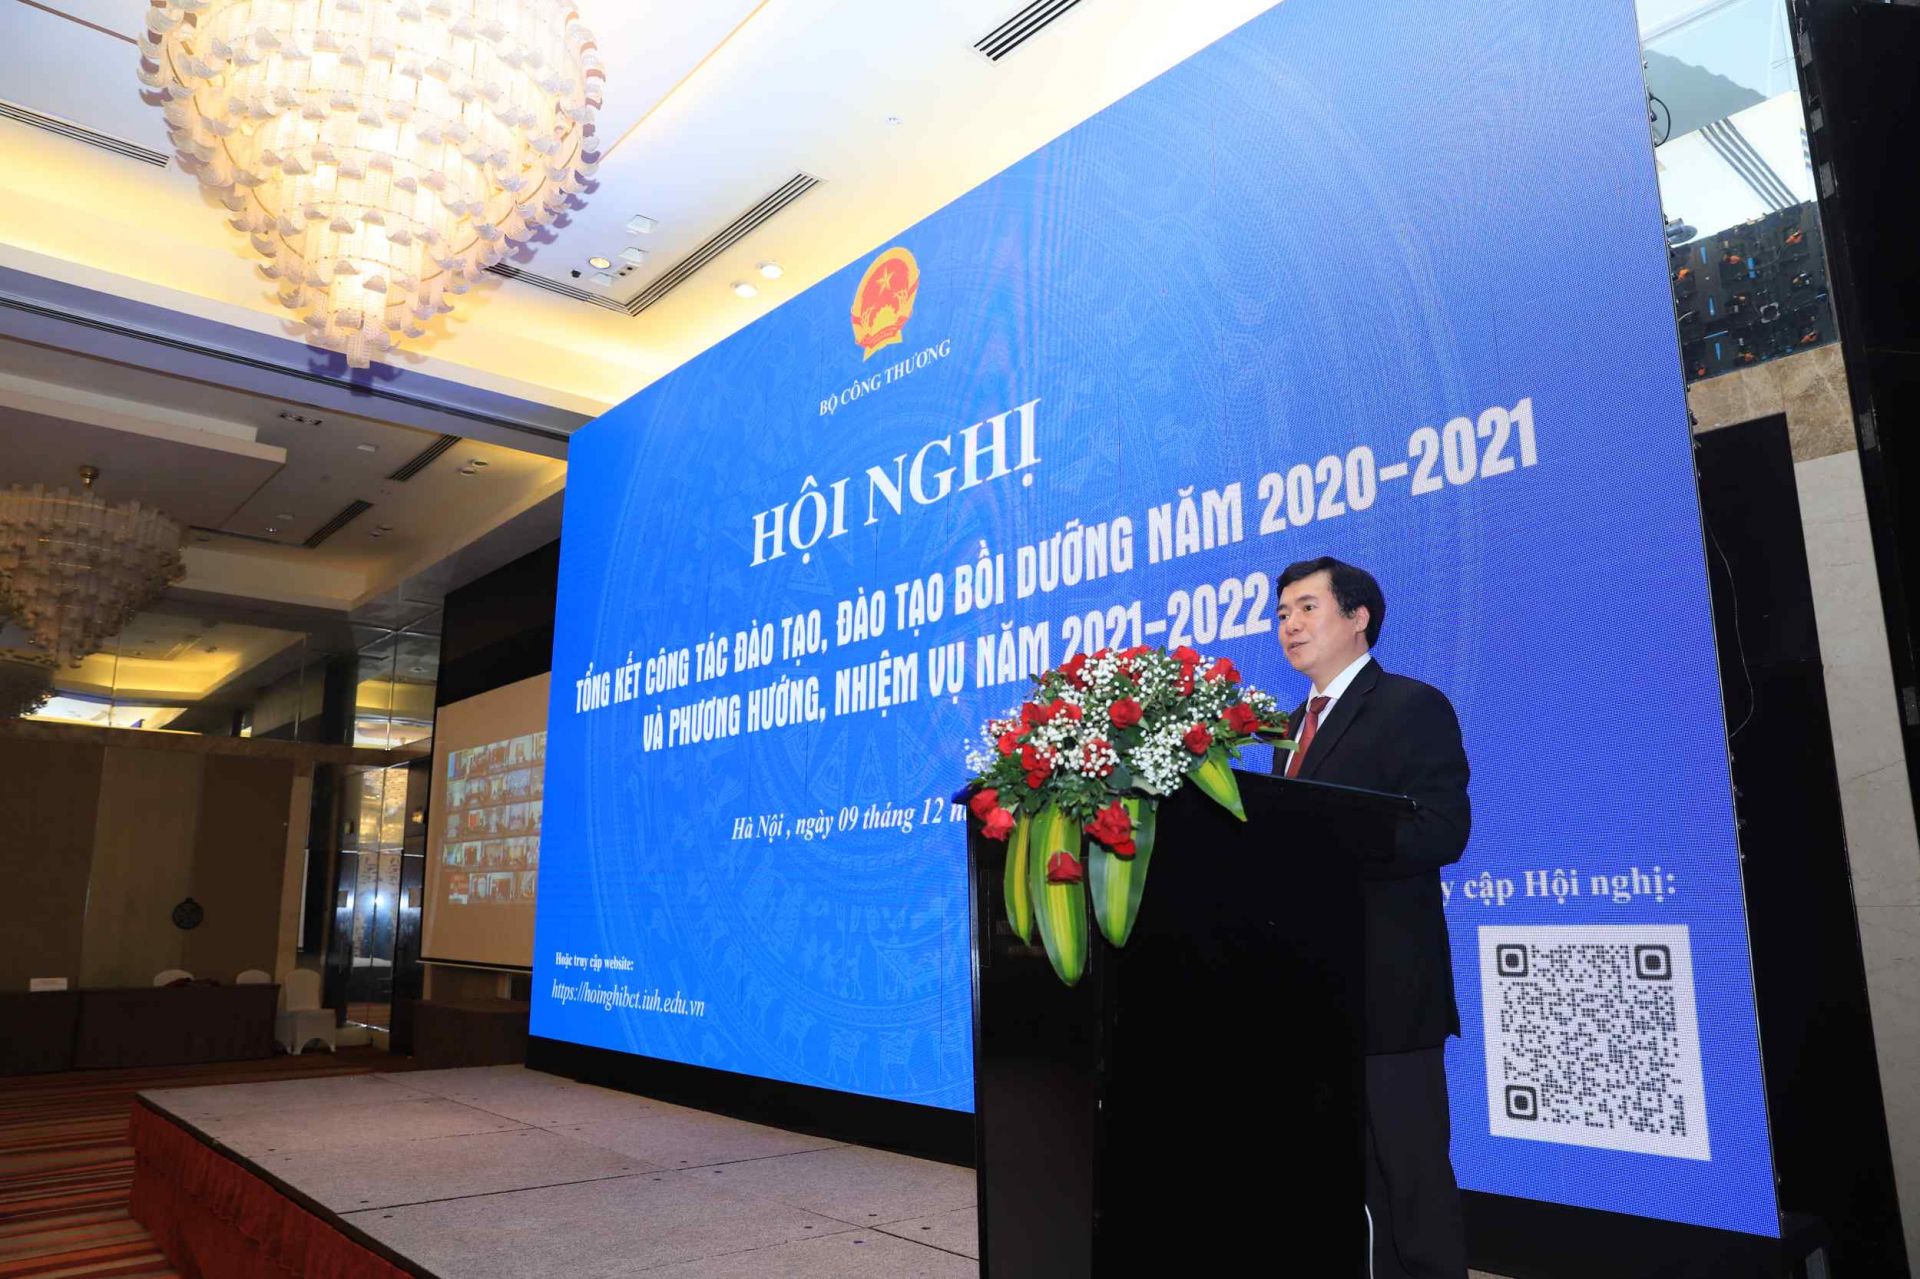 Thứ trưởng Bộ Công Thương Nguyễn Sinh Nhật Tân phát biểu khai mạc Hội nghị